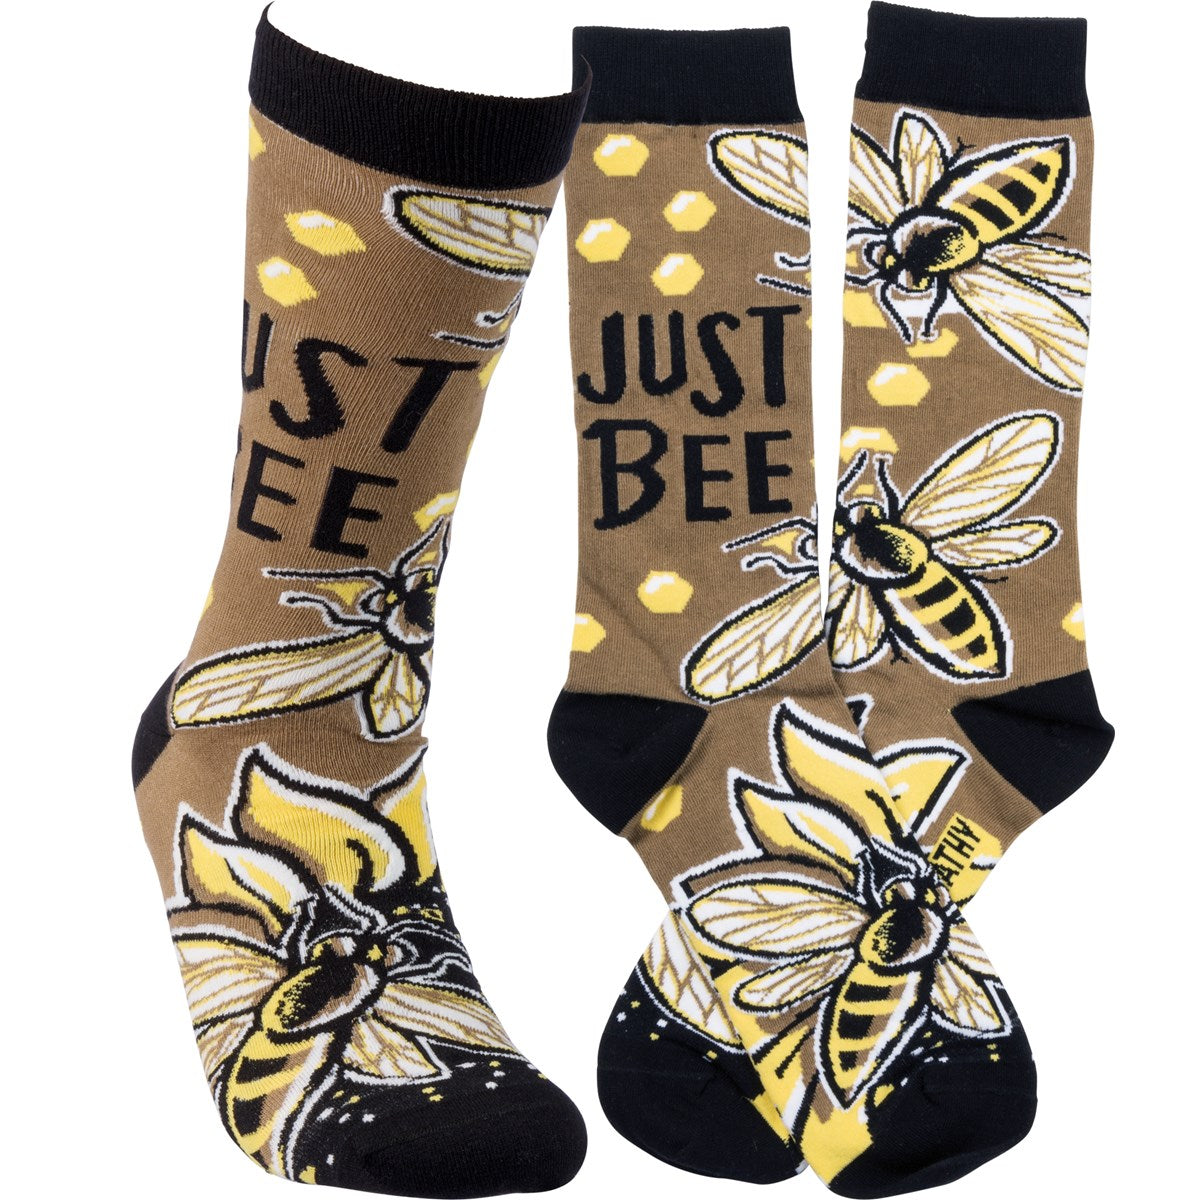 * Just Bee Socks